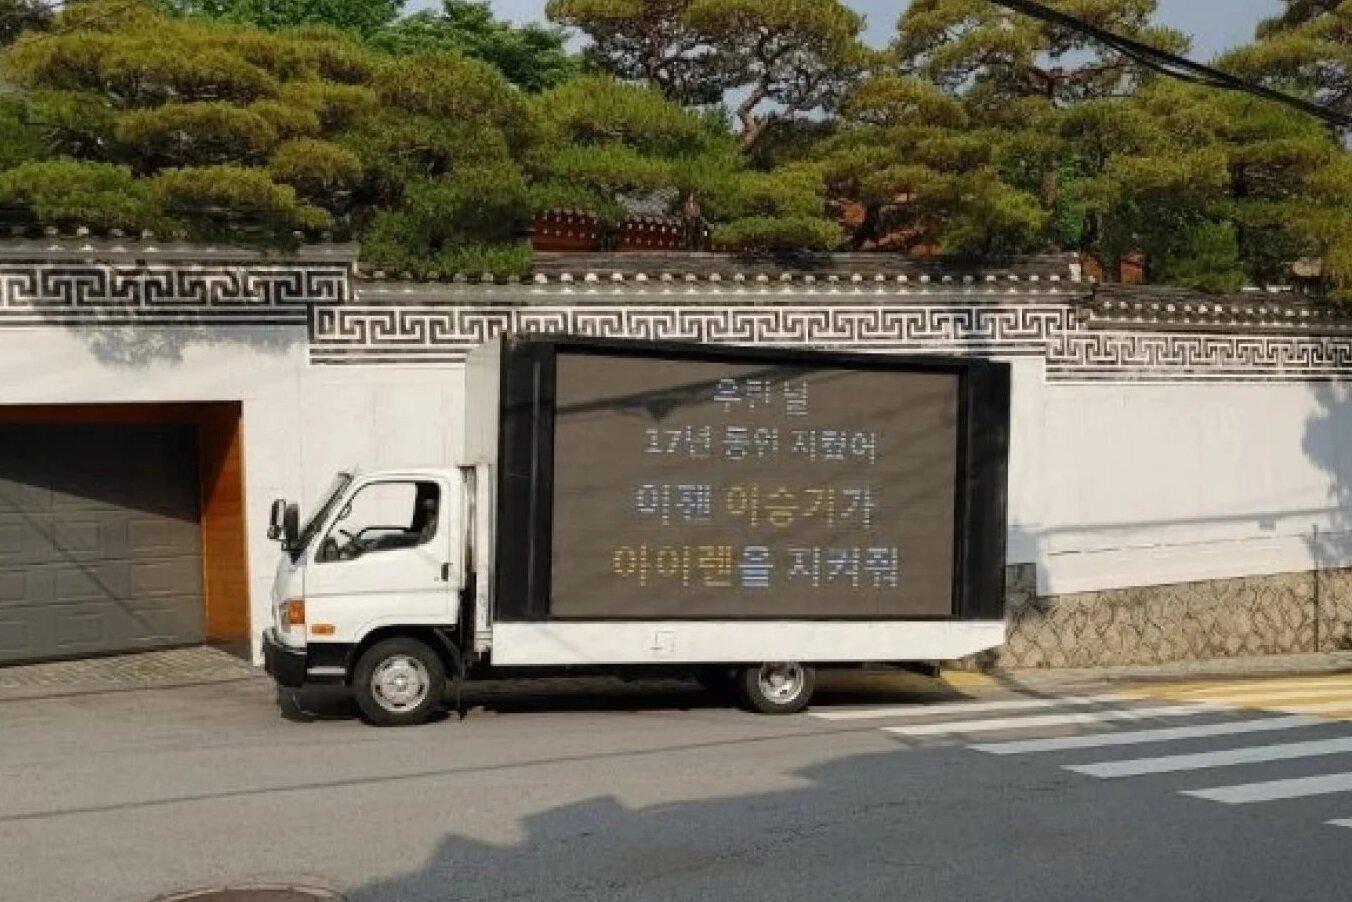 Xe tải phản đối mối quan hệ của Lee Seung Gi và Lee Da In. (Ảnh: Internet)